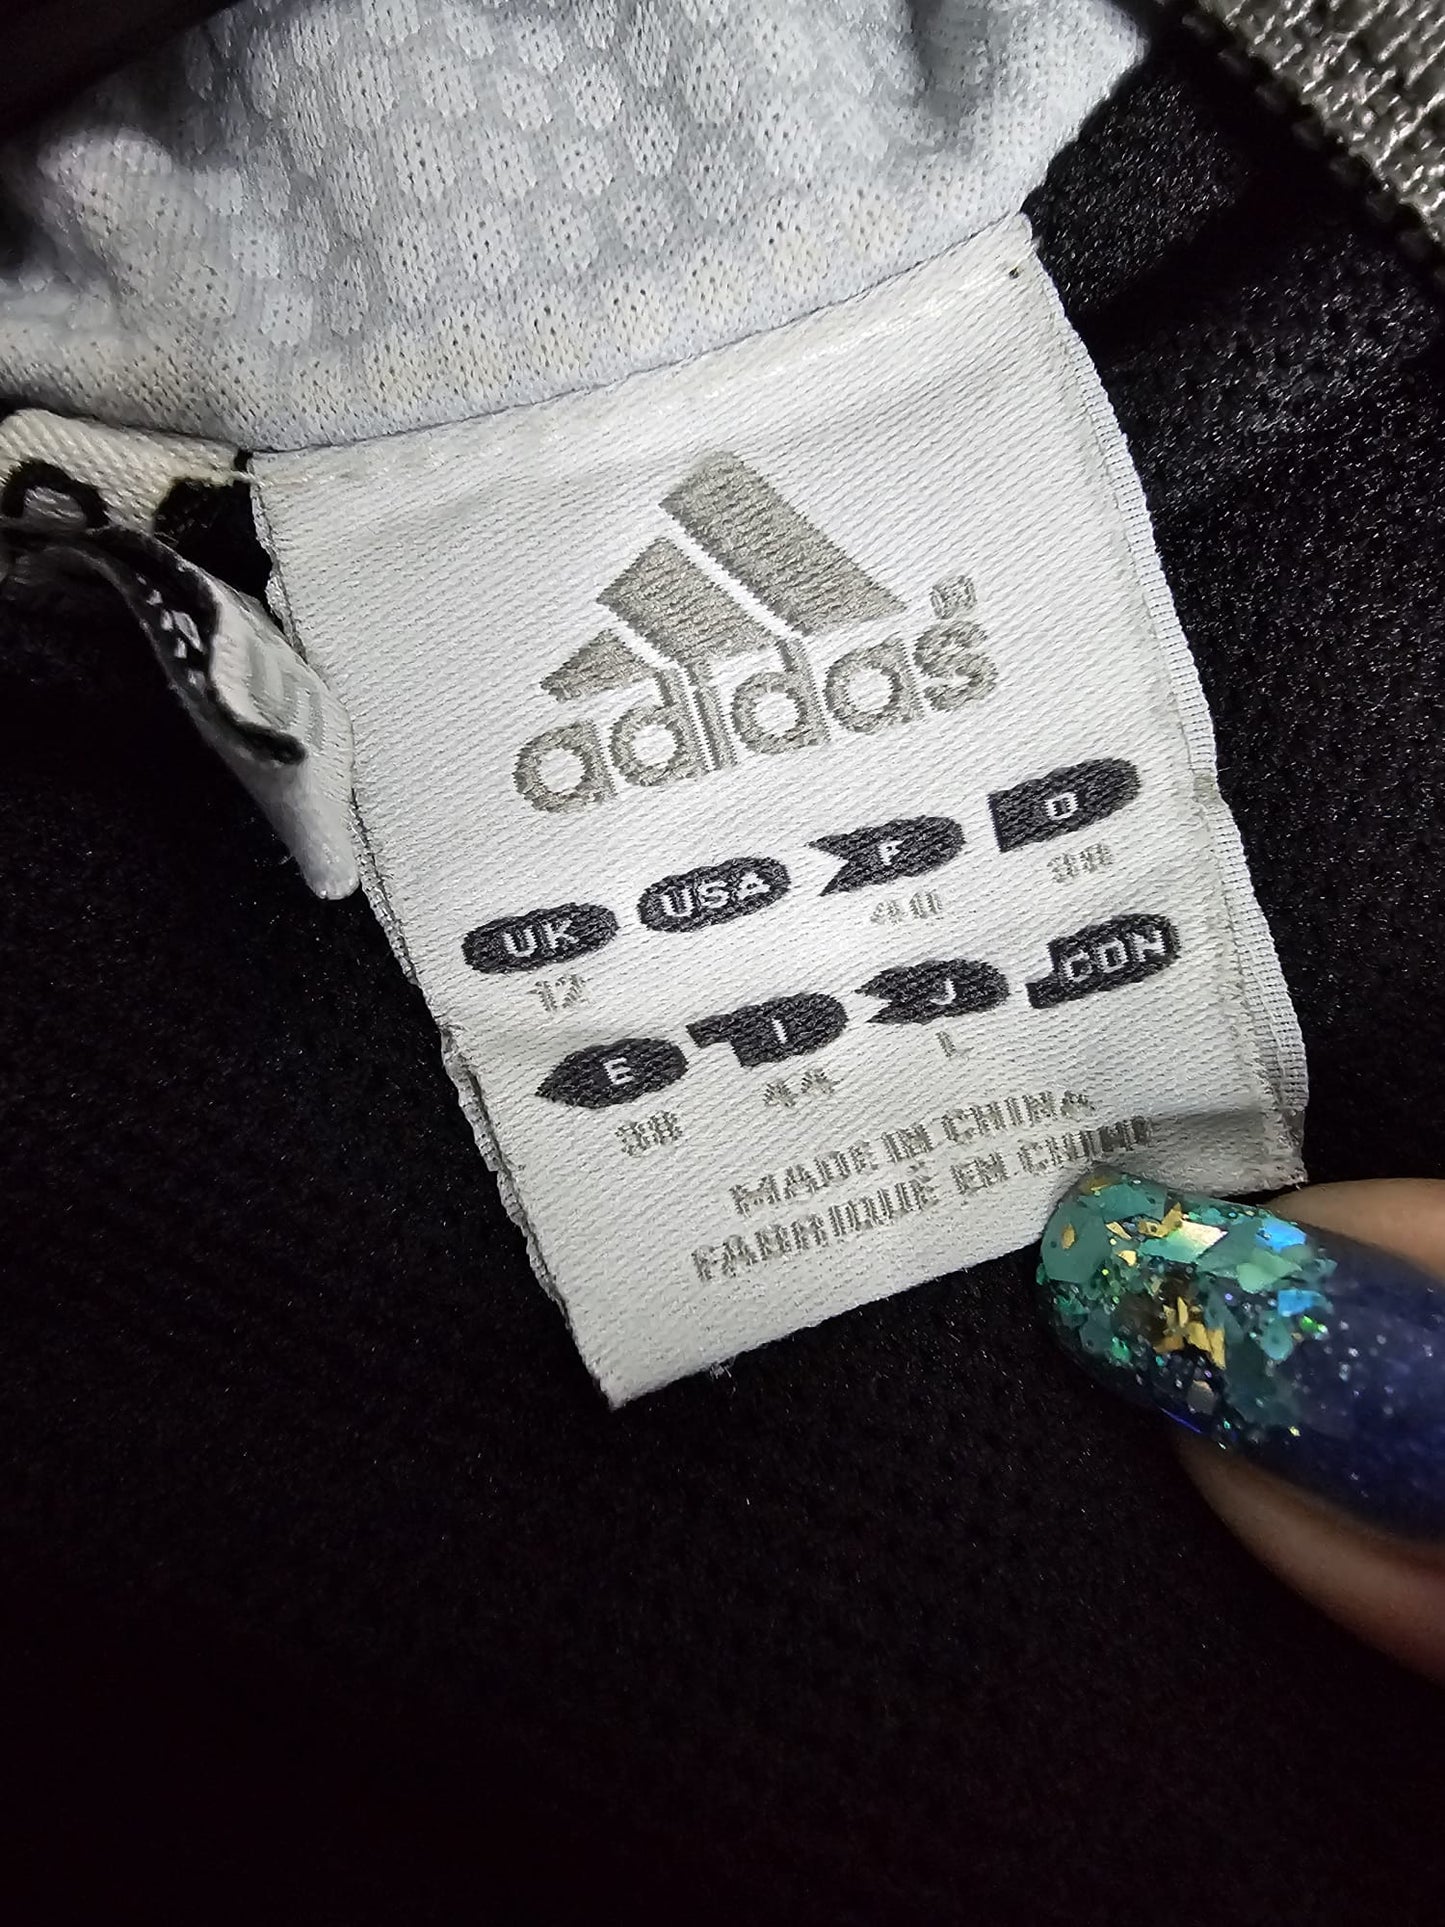 Adidas women’s track zip up top